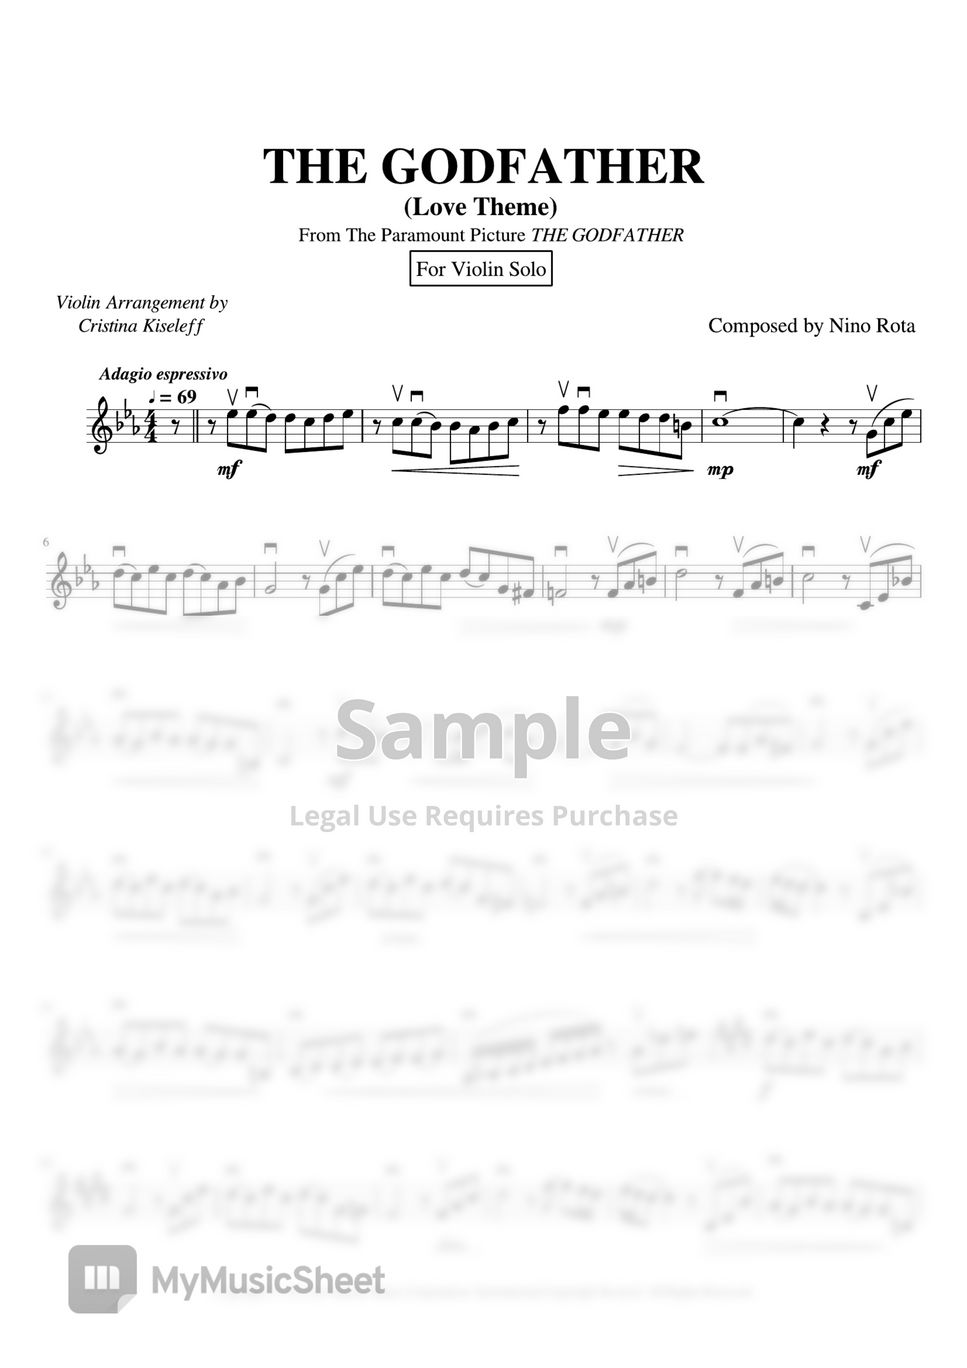 Nino Rota - THE GODFATHER Main Theme (For Violin Solo) by Cristina Kiseleff